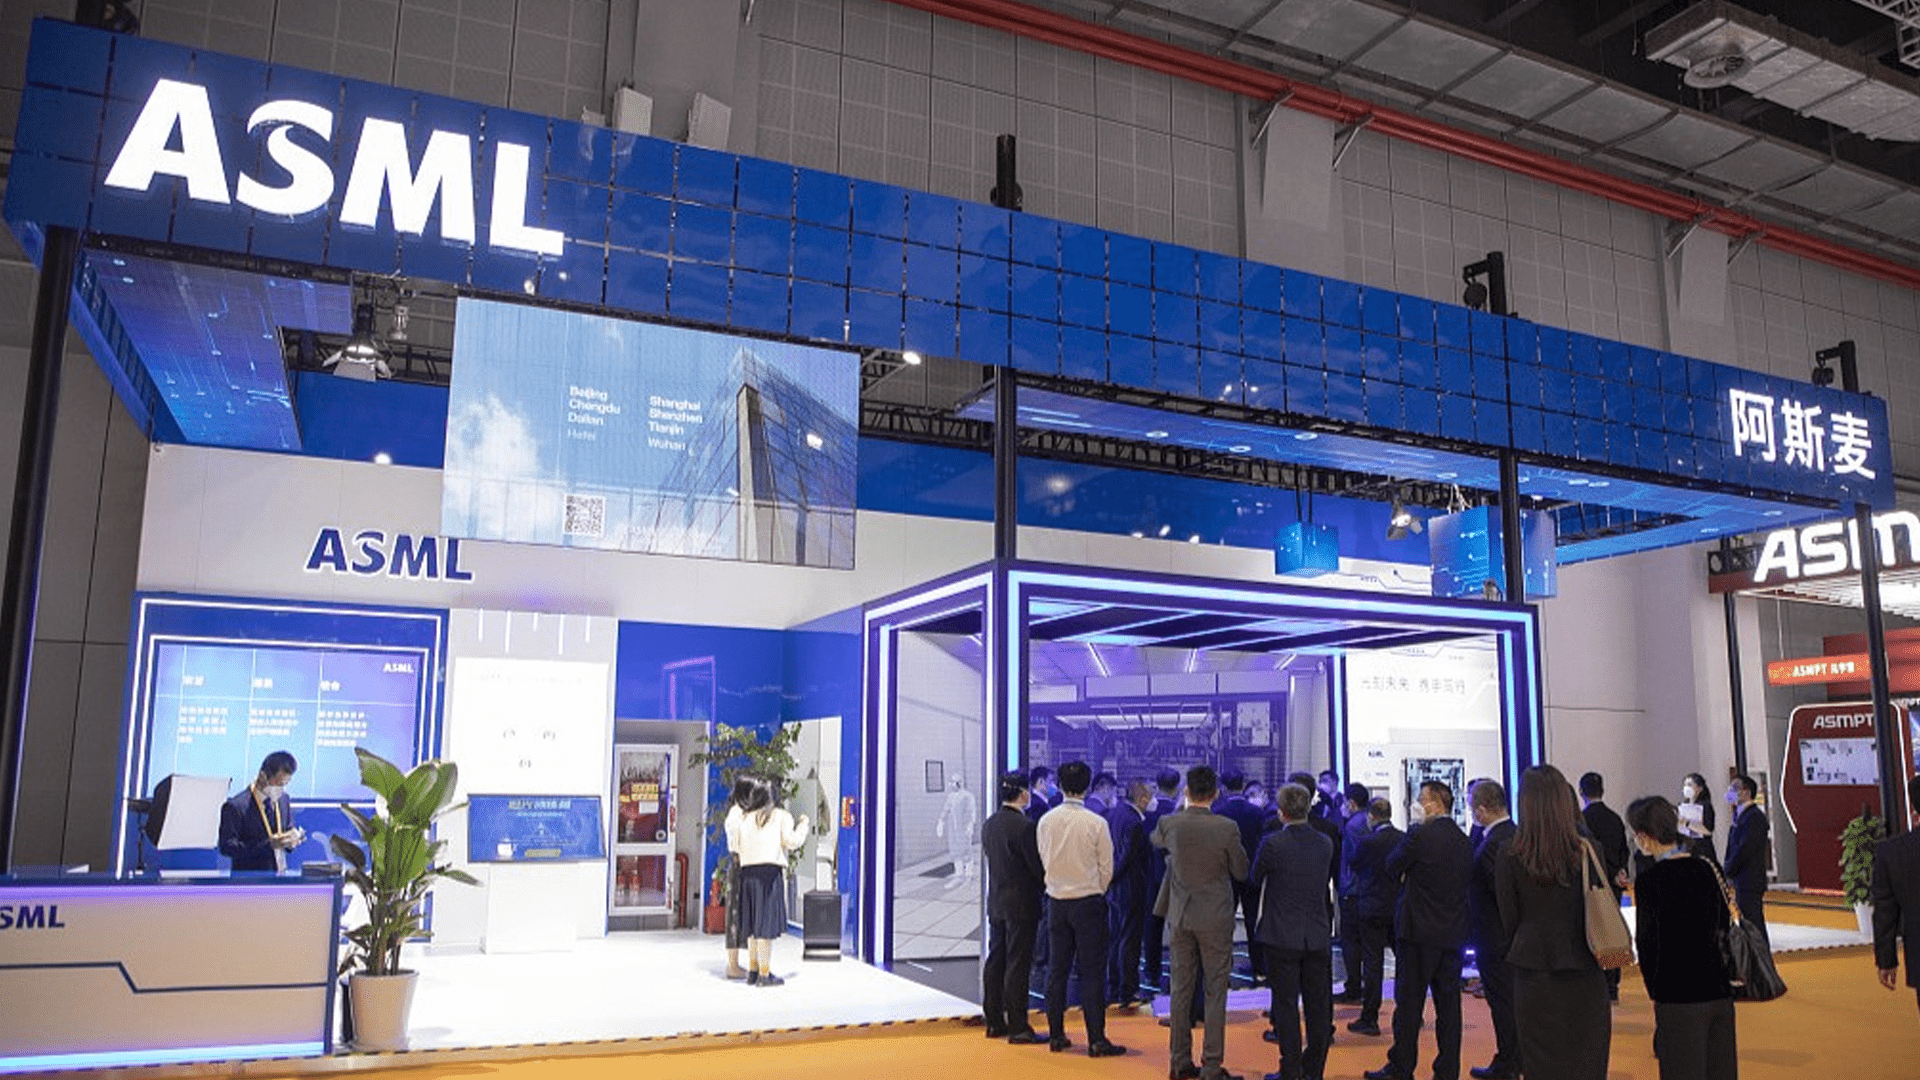 شرکت ASML در نمایشگاه CEO